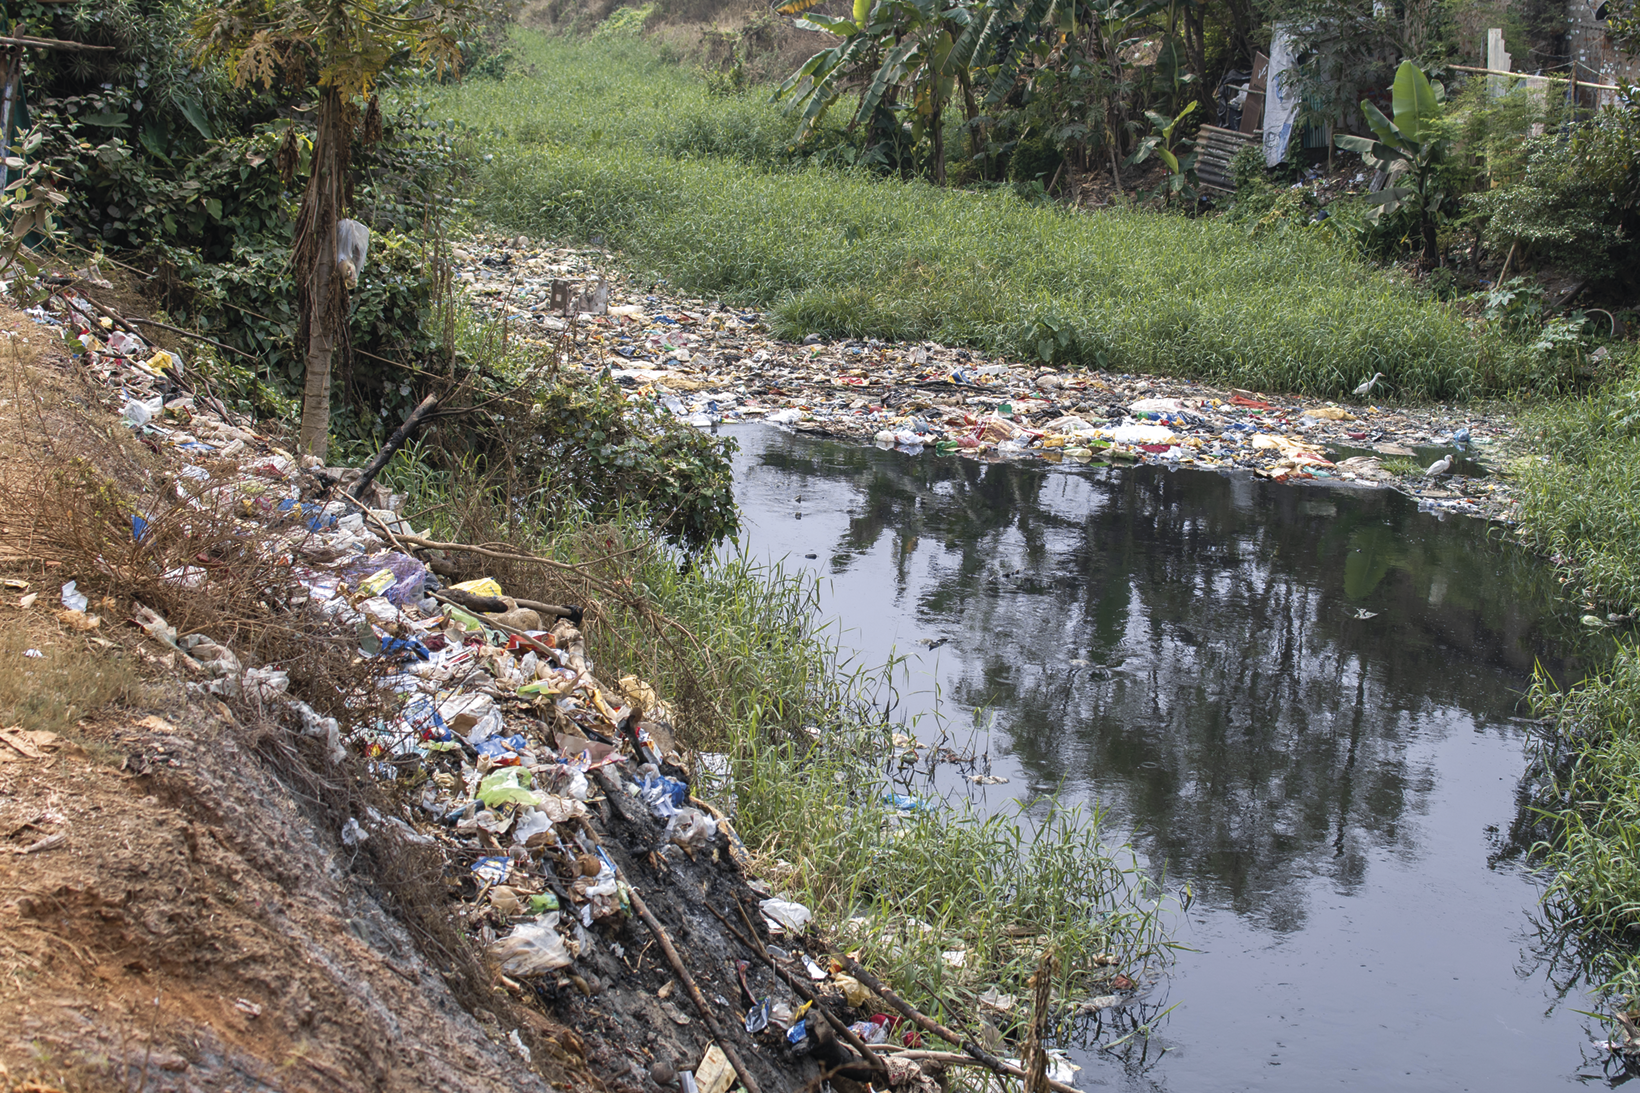 Fotografia. Curso de um rio repleto de lixo nas duas margens. Ao fundo, vegetação rasteira e árvores.